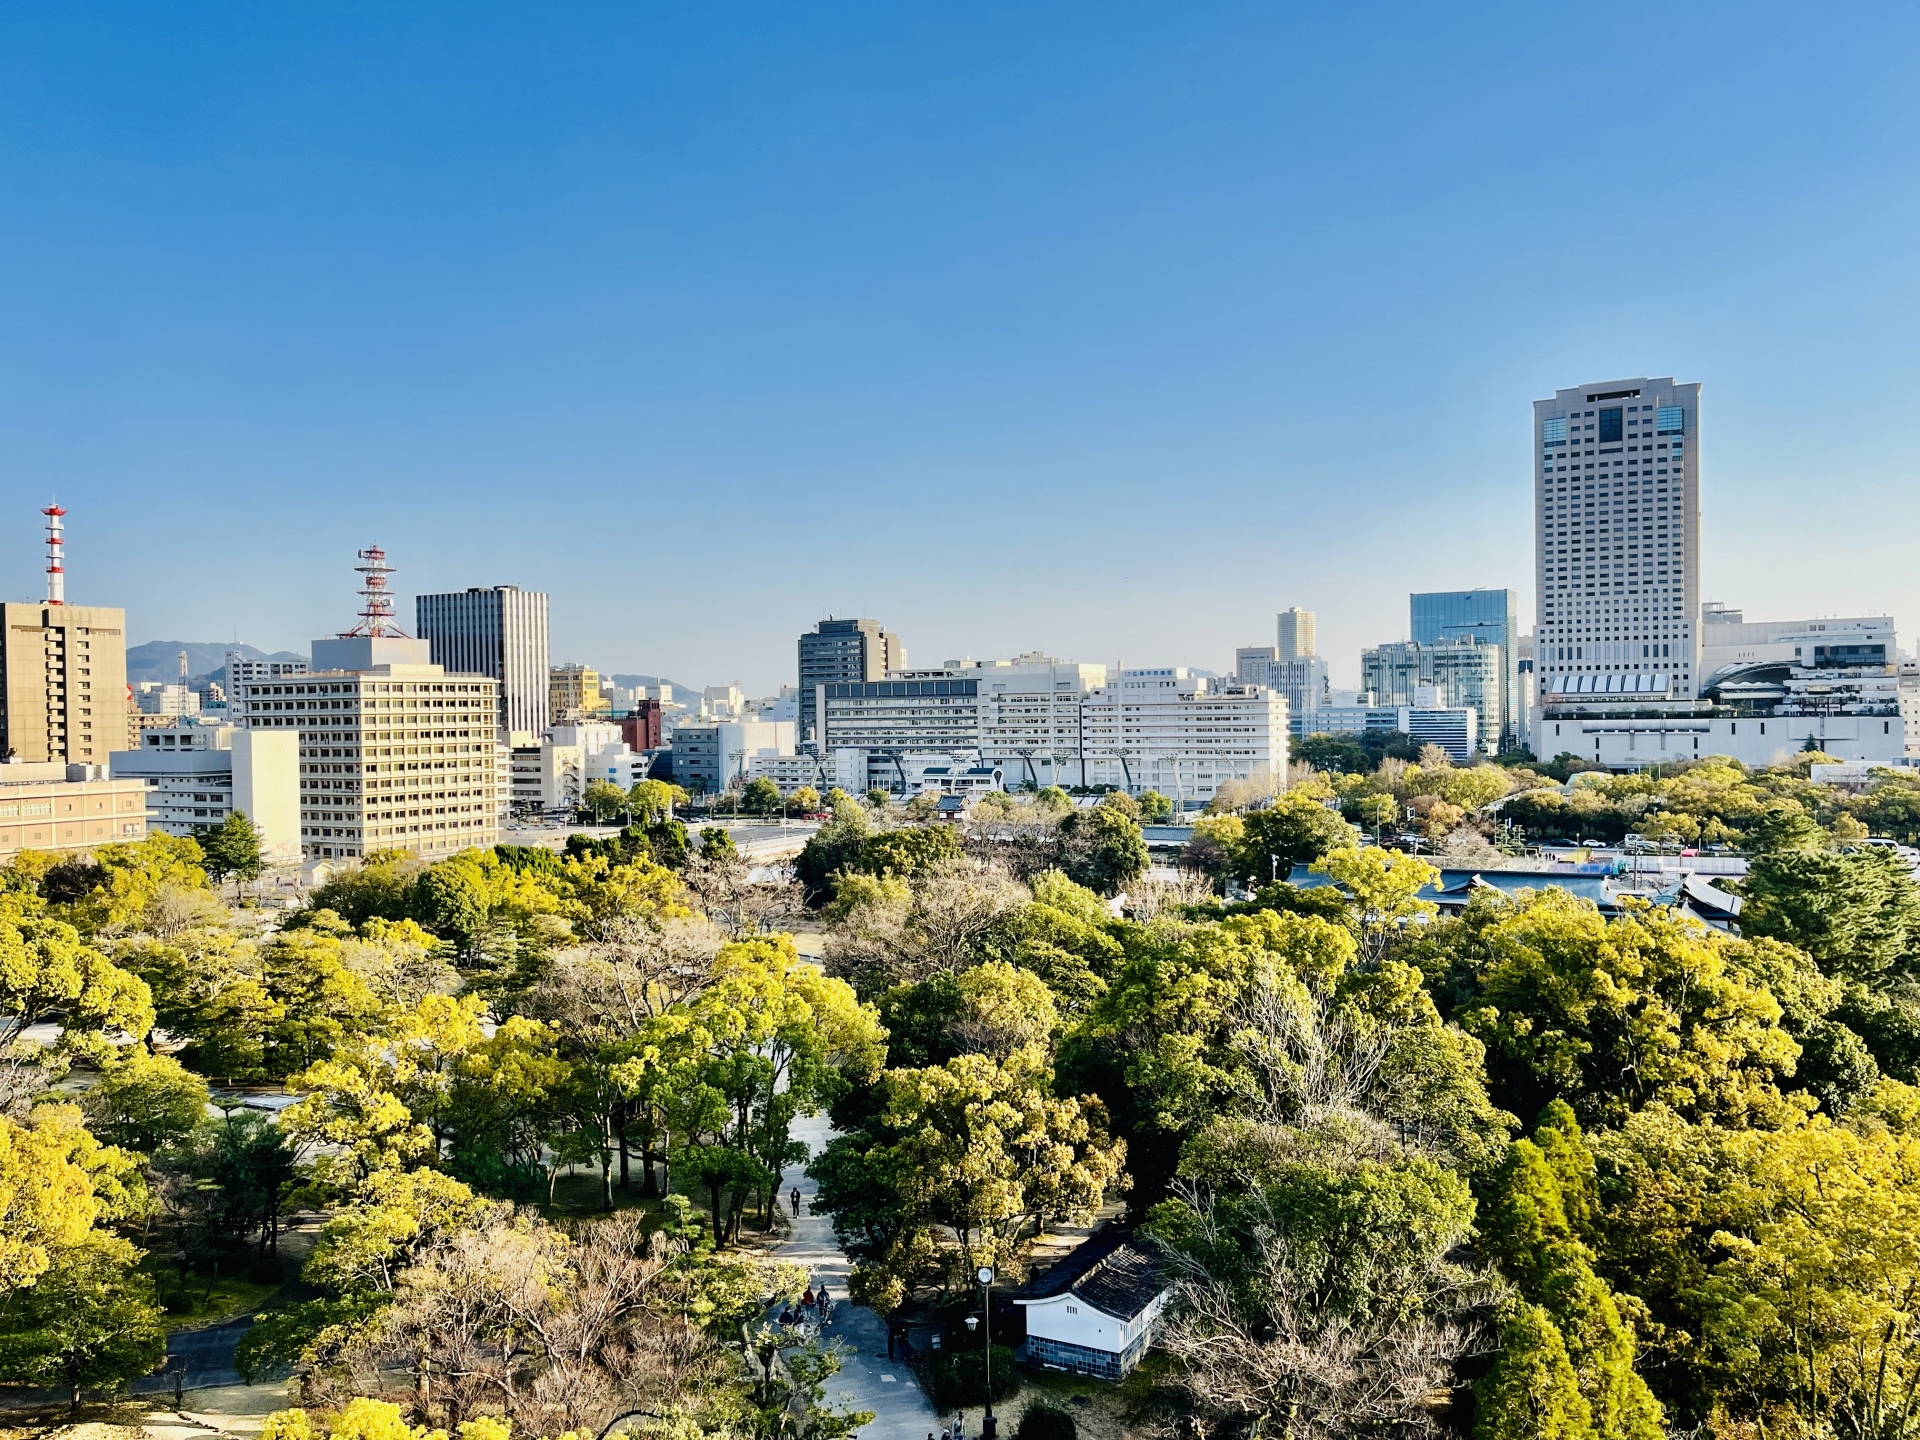 広島城や平和記念公園、縮景園など観光スポットが点在する広島市。2020年の約120万人をピークに人口は微減している。画像は広島城から見たまち並み。